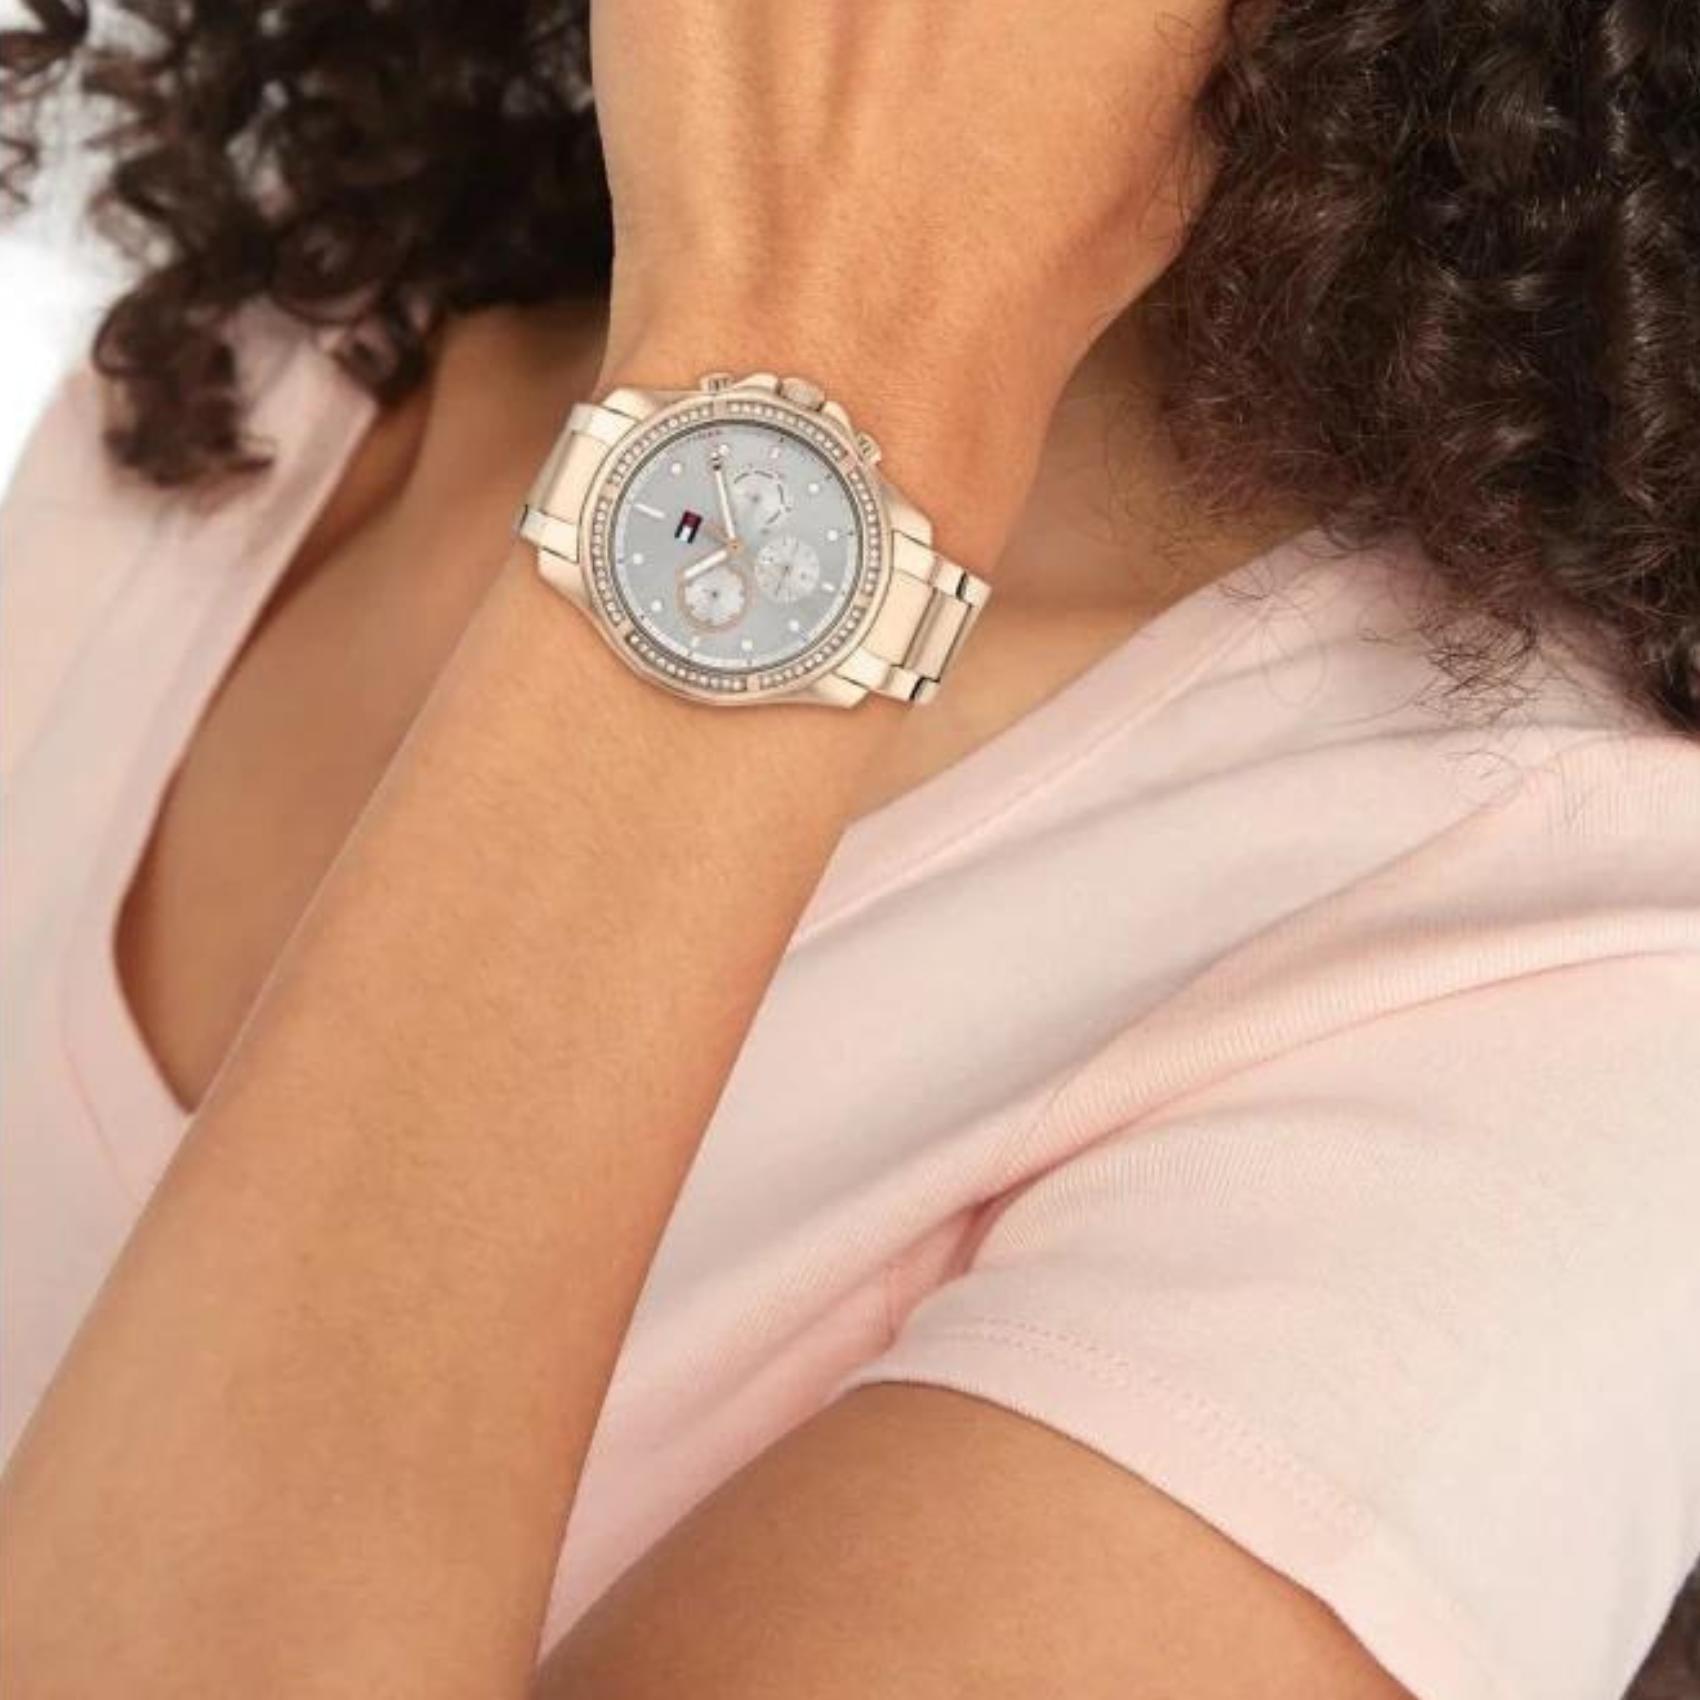 Γυναικείο ρολόι Tommy Hilfiger Brooklyn 1782572 με ροζ χρυσό ατσάλινο μπρασελέ και ασημί καντράν διαμέτρου 40mm με ζιργκόν.